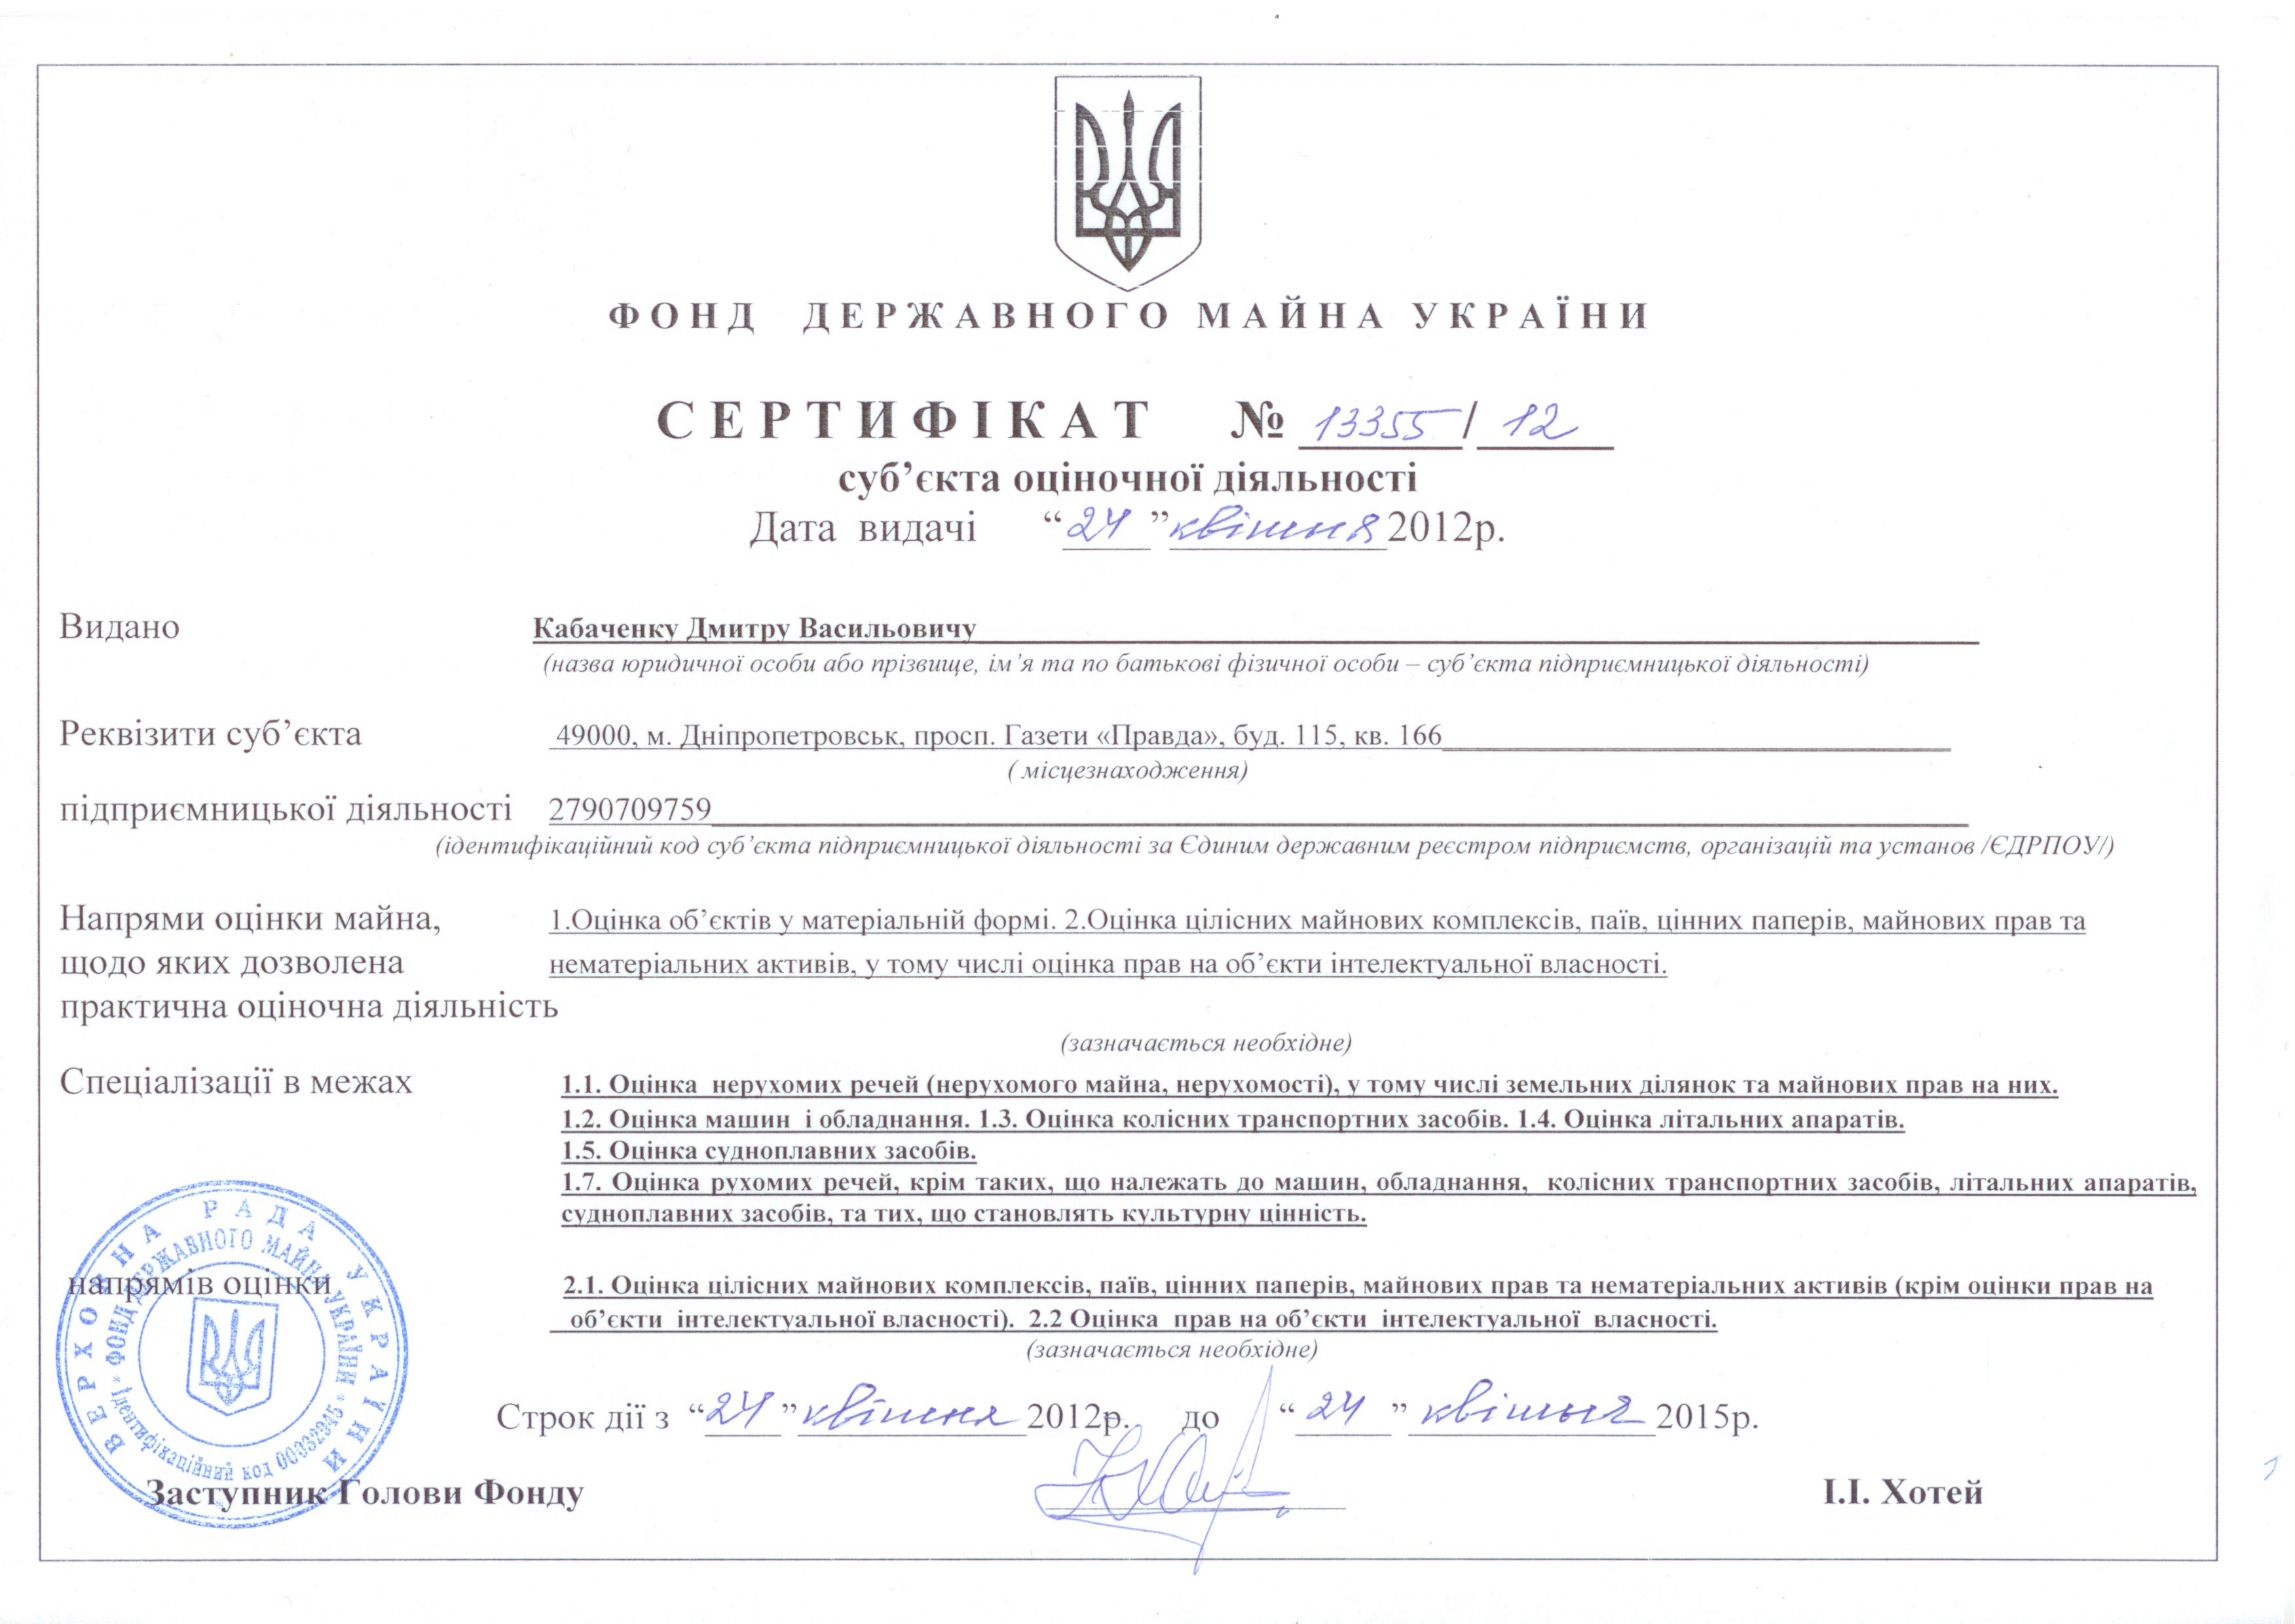 Сертифікат суб'єкта оціночної діяльності № 13355/12 від 24 квітня 2012 р.